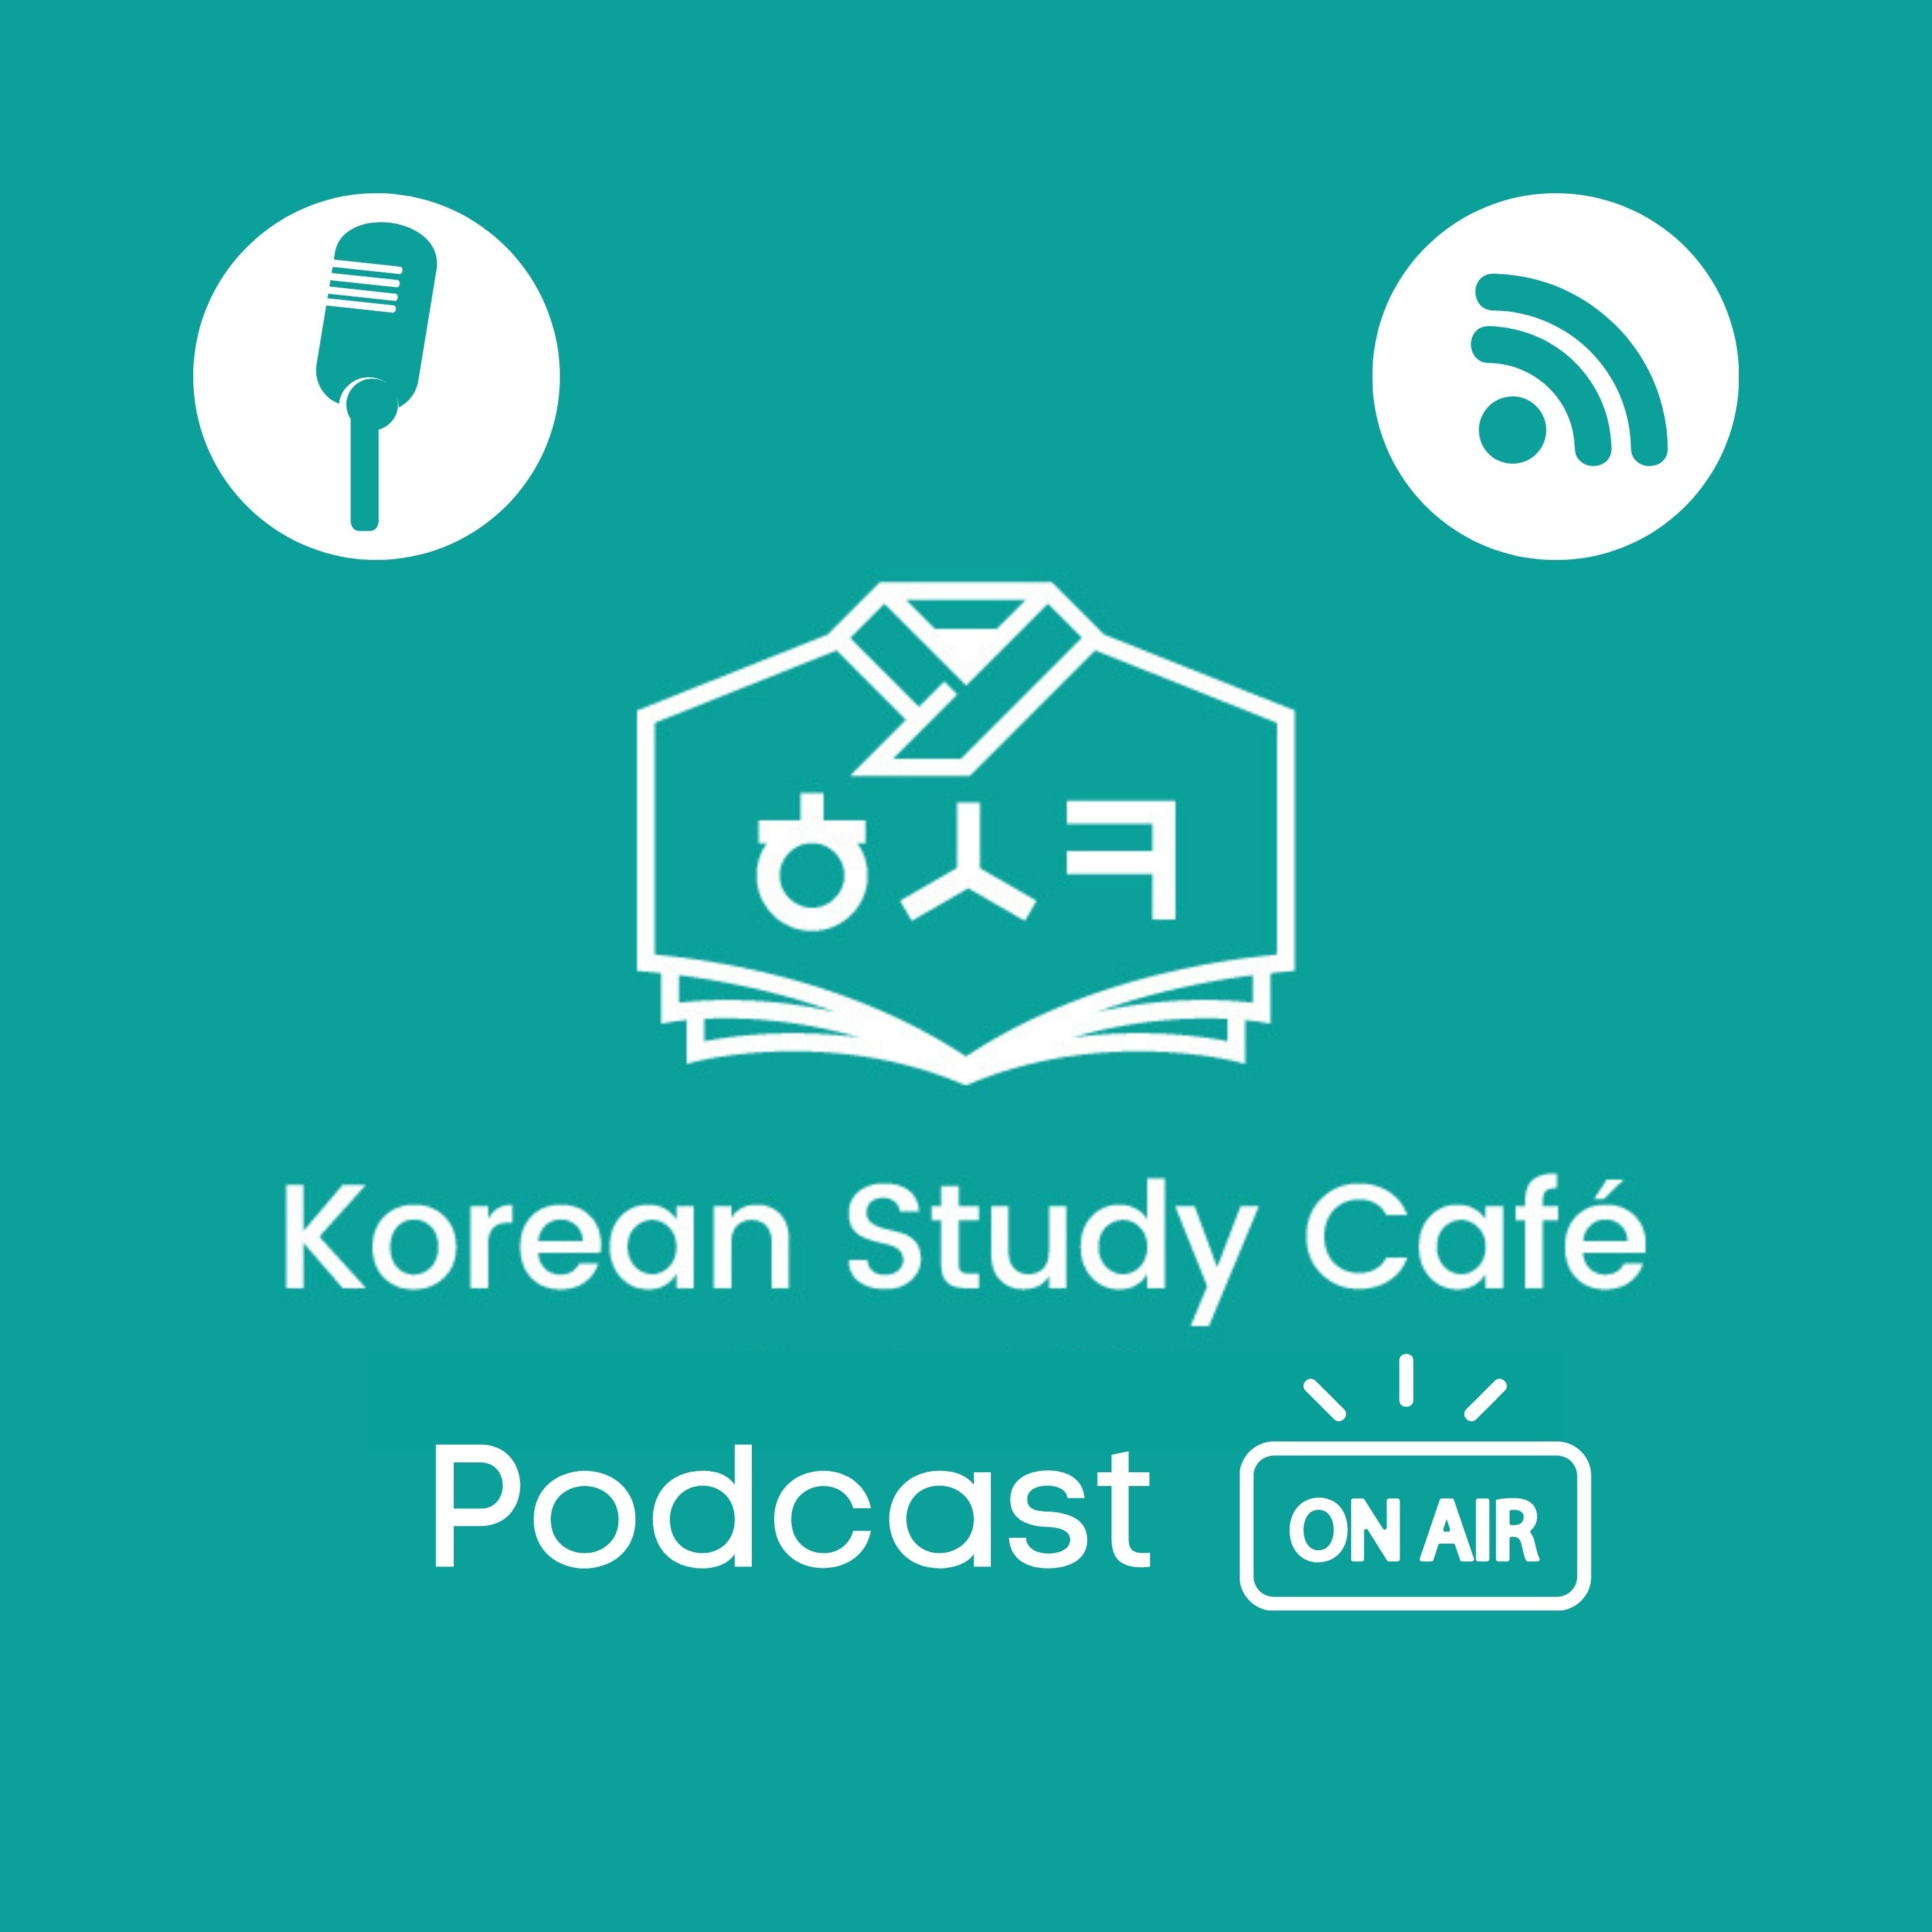 Korean Study Cafe Podcast